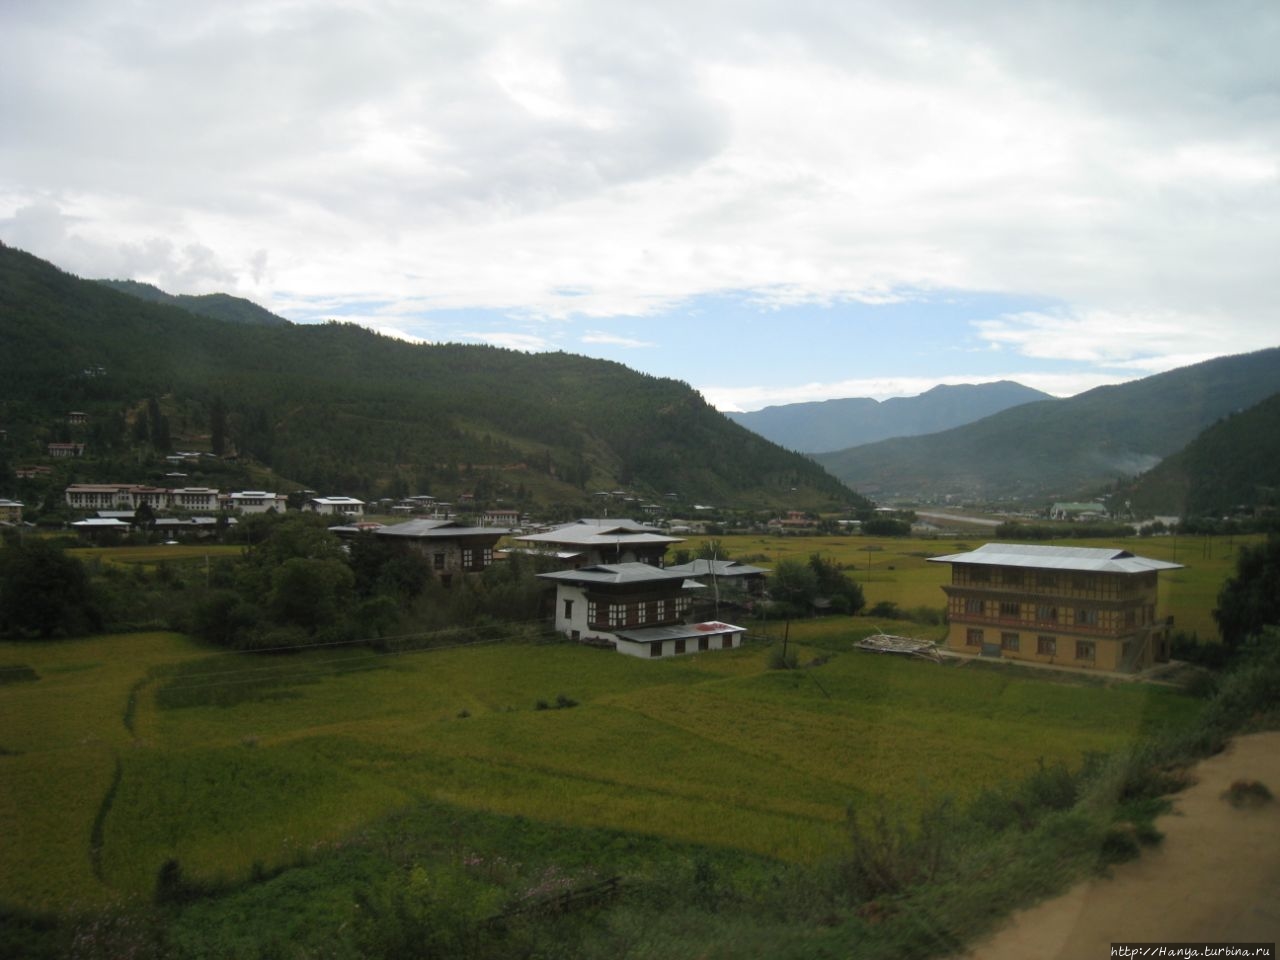 Дорога в Паро и размышления о миграции и глобализации. Ч.70 Паро, Бутан